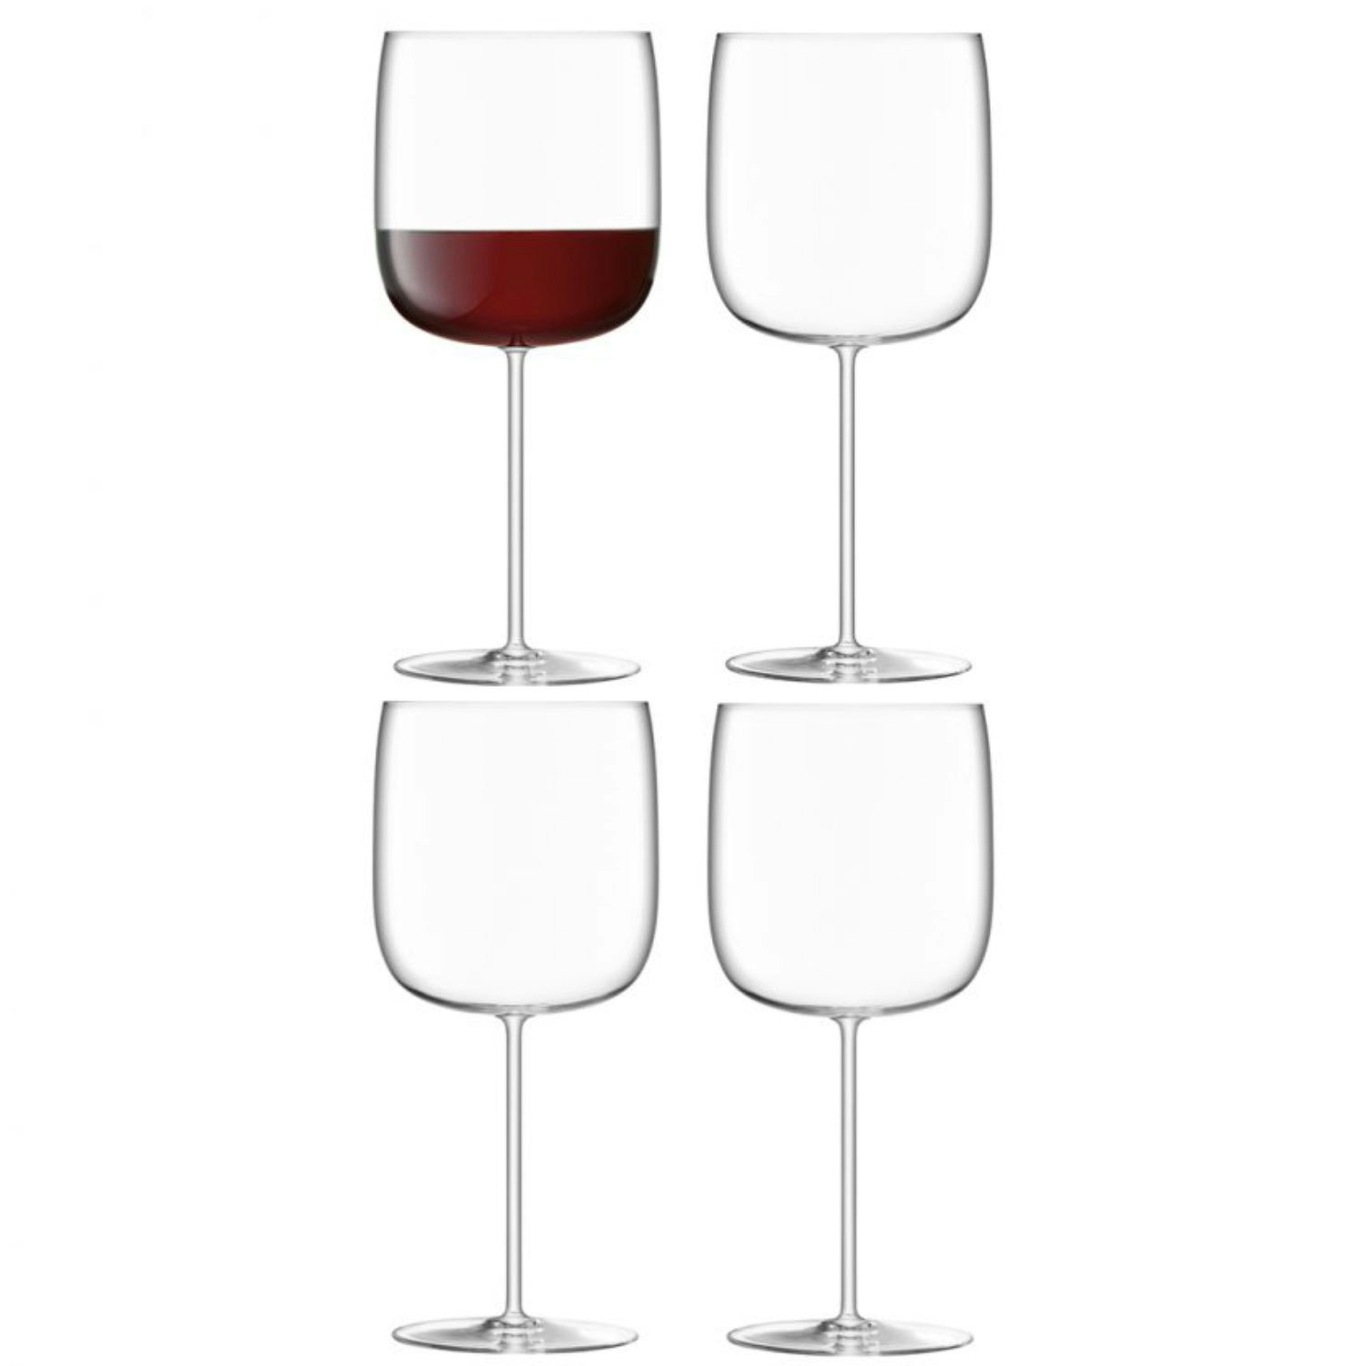 Borough Grand Cru Wine Glass 4-pack, 66 cl